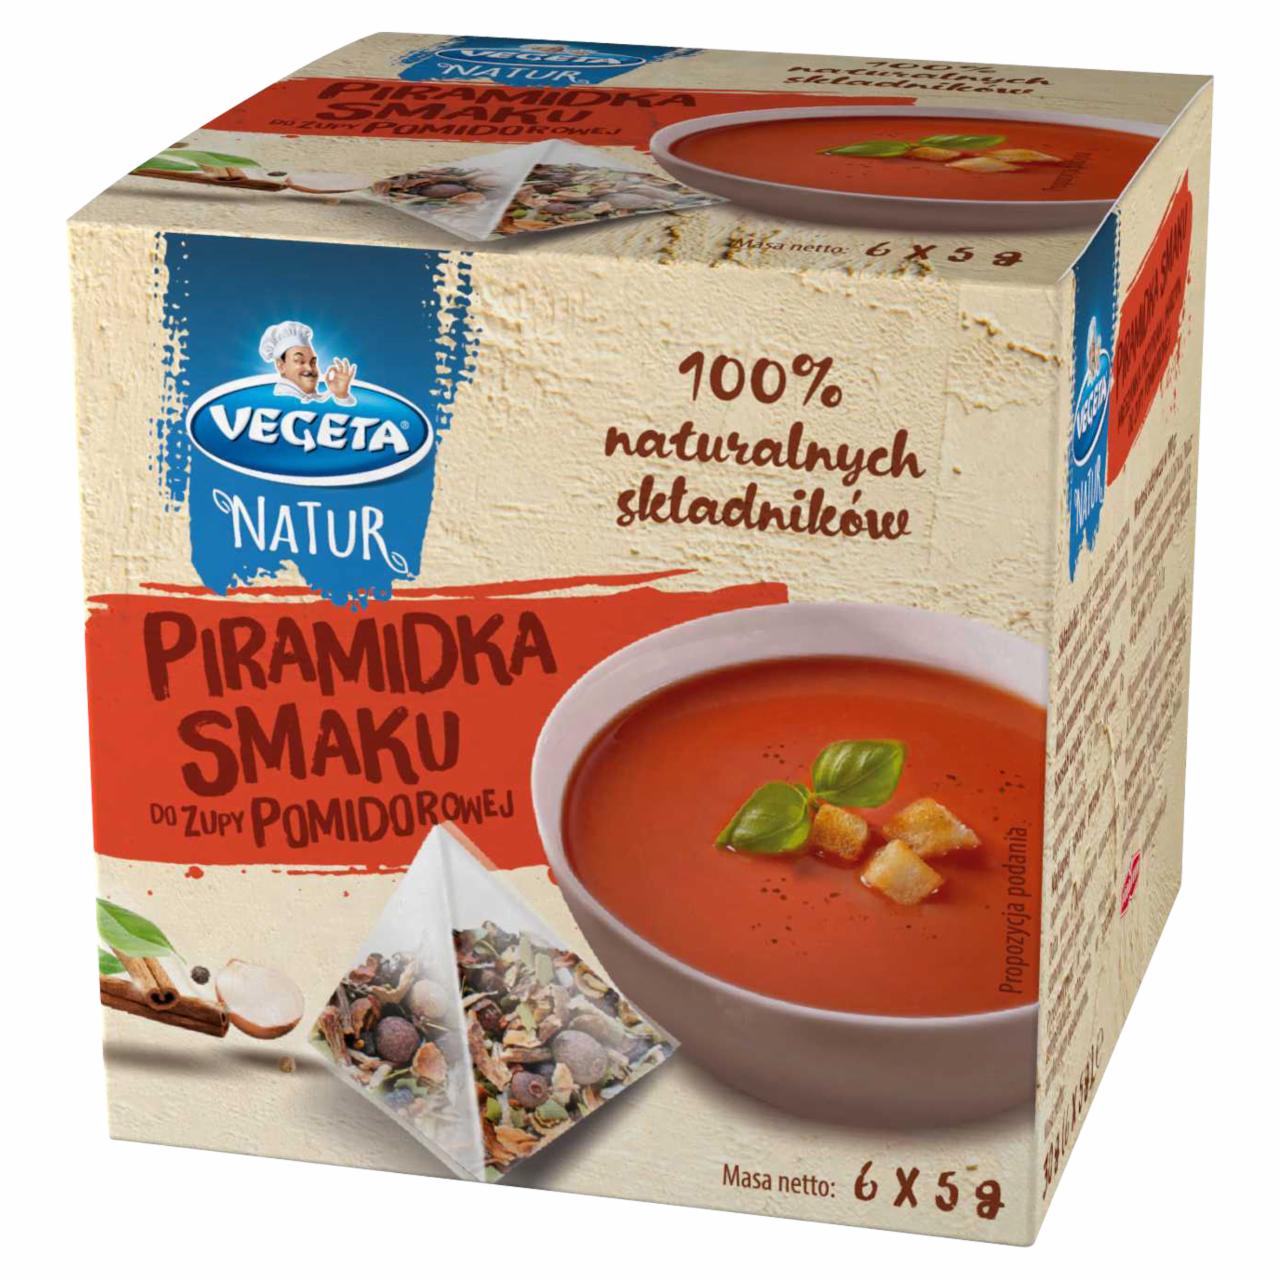 Zdjęcia - Vegeta Natur Piramidka smaku do zupy pomidorowej 30 g (6 x 5 g)